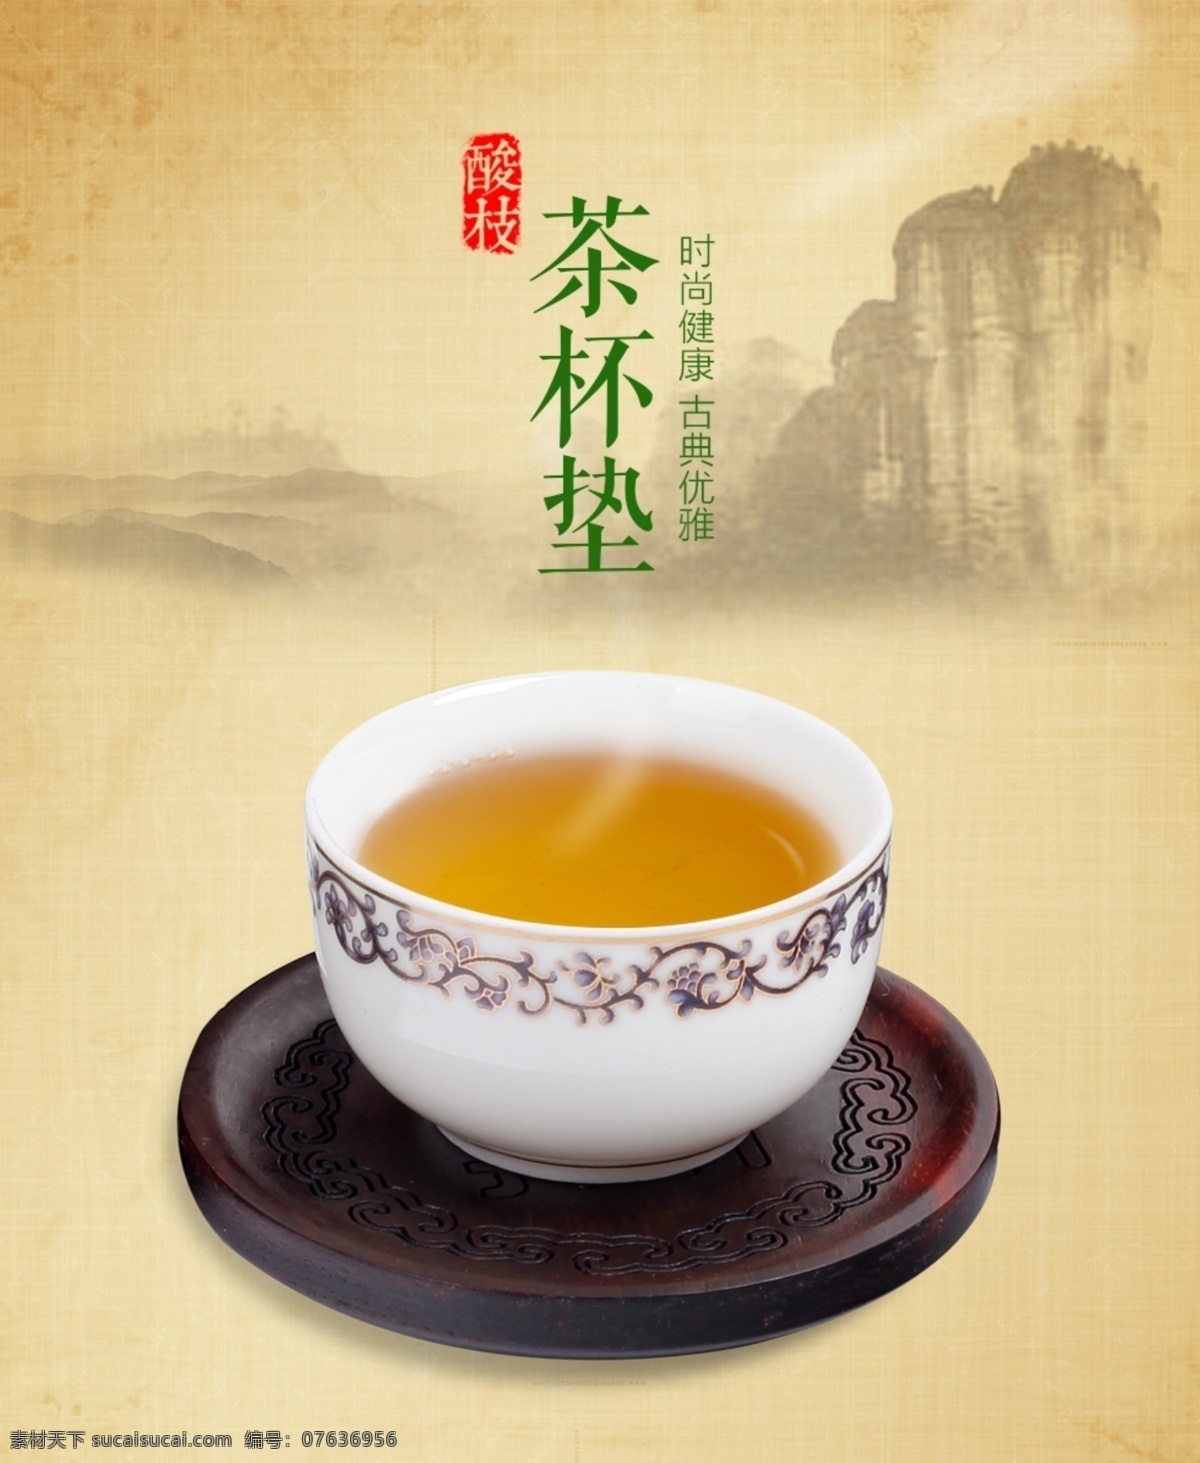 茶杯 垫 分层 茶文化 品茶 淘宝 天猫 作品 茶杯垫 海报 原创设计 原创海报